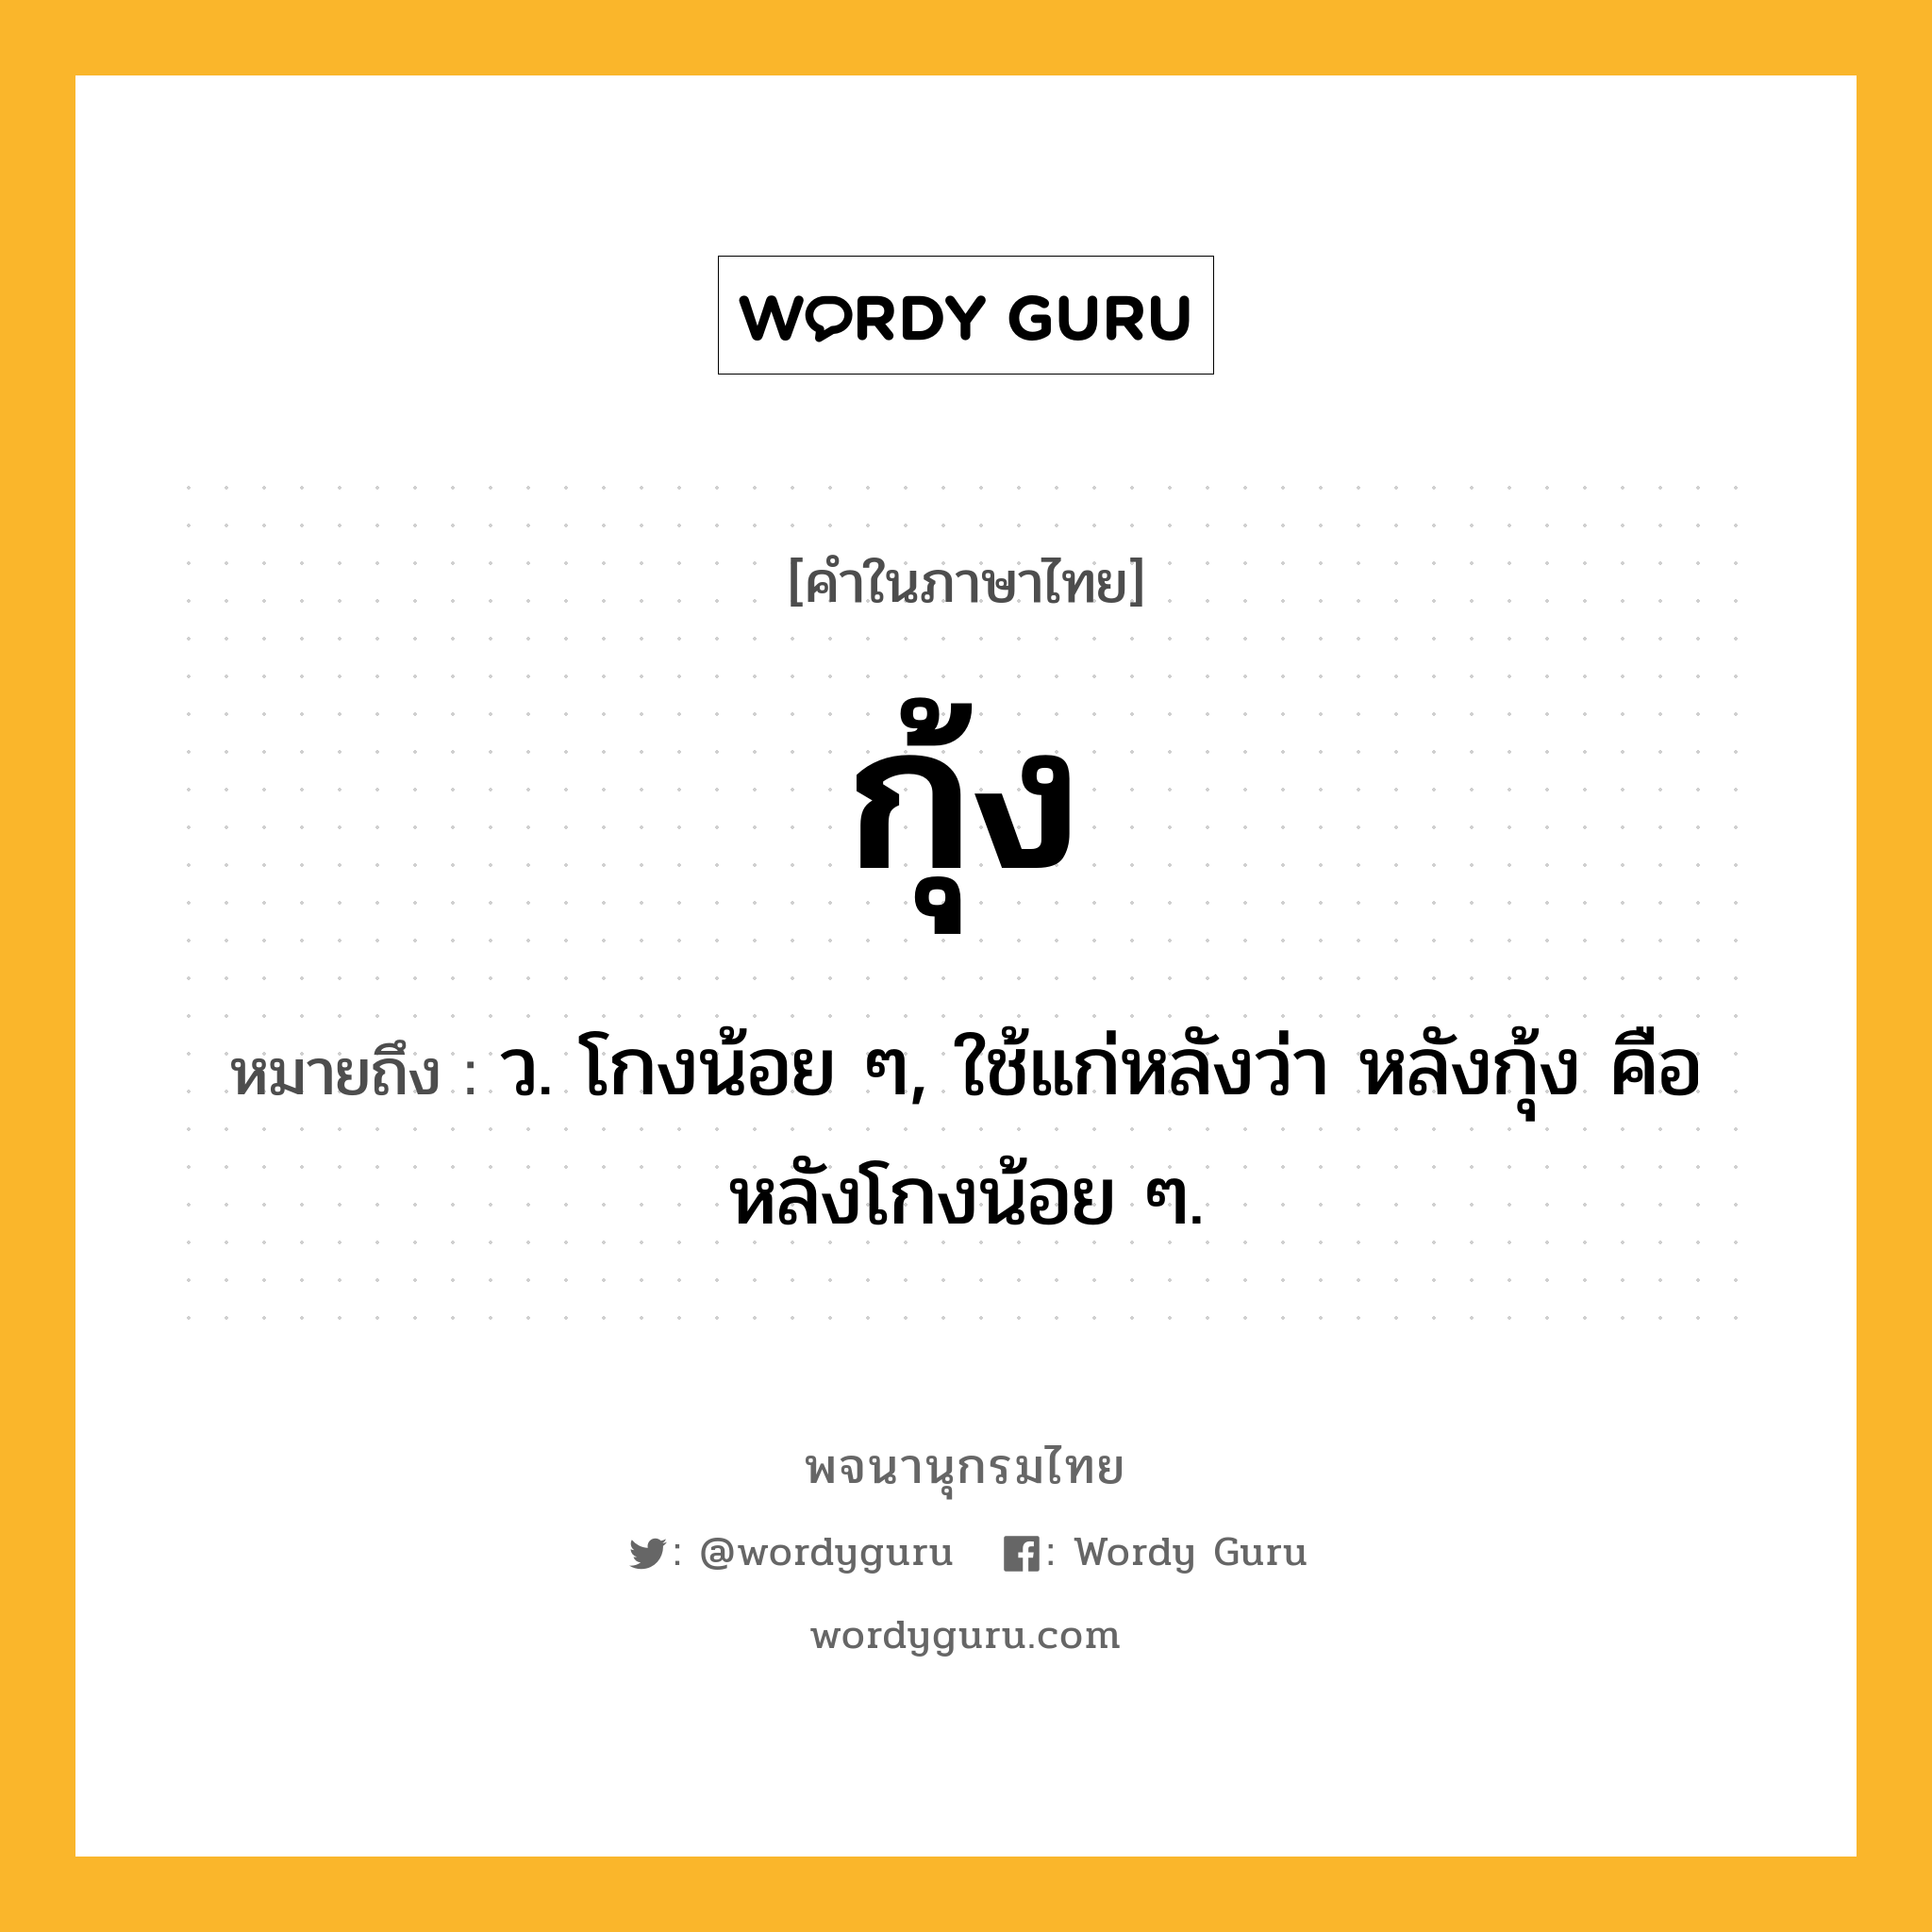 กุ้ง ความหมาย หมายถึงอะไร?, คำในภาษาไทย กุ้ง หมายถึง ว. โกงน้อย ๆ, ใช้แก่หลังว่า หลังกุ้ง คือ หลังโกงน้อย ๆ.